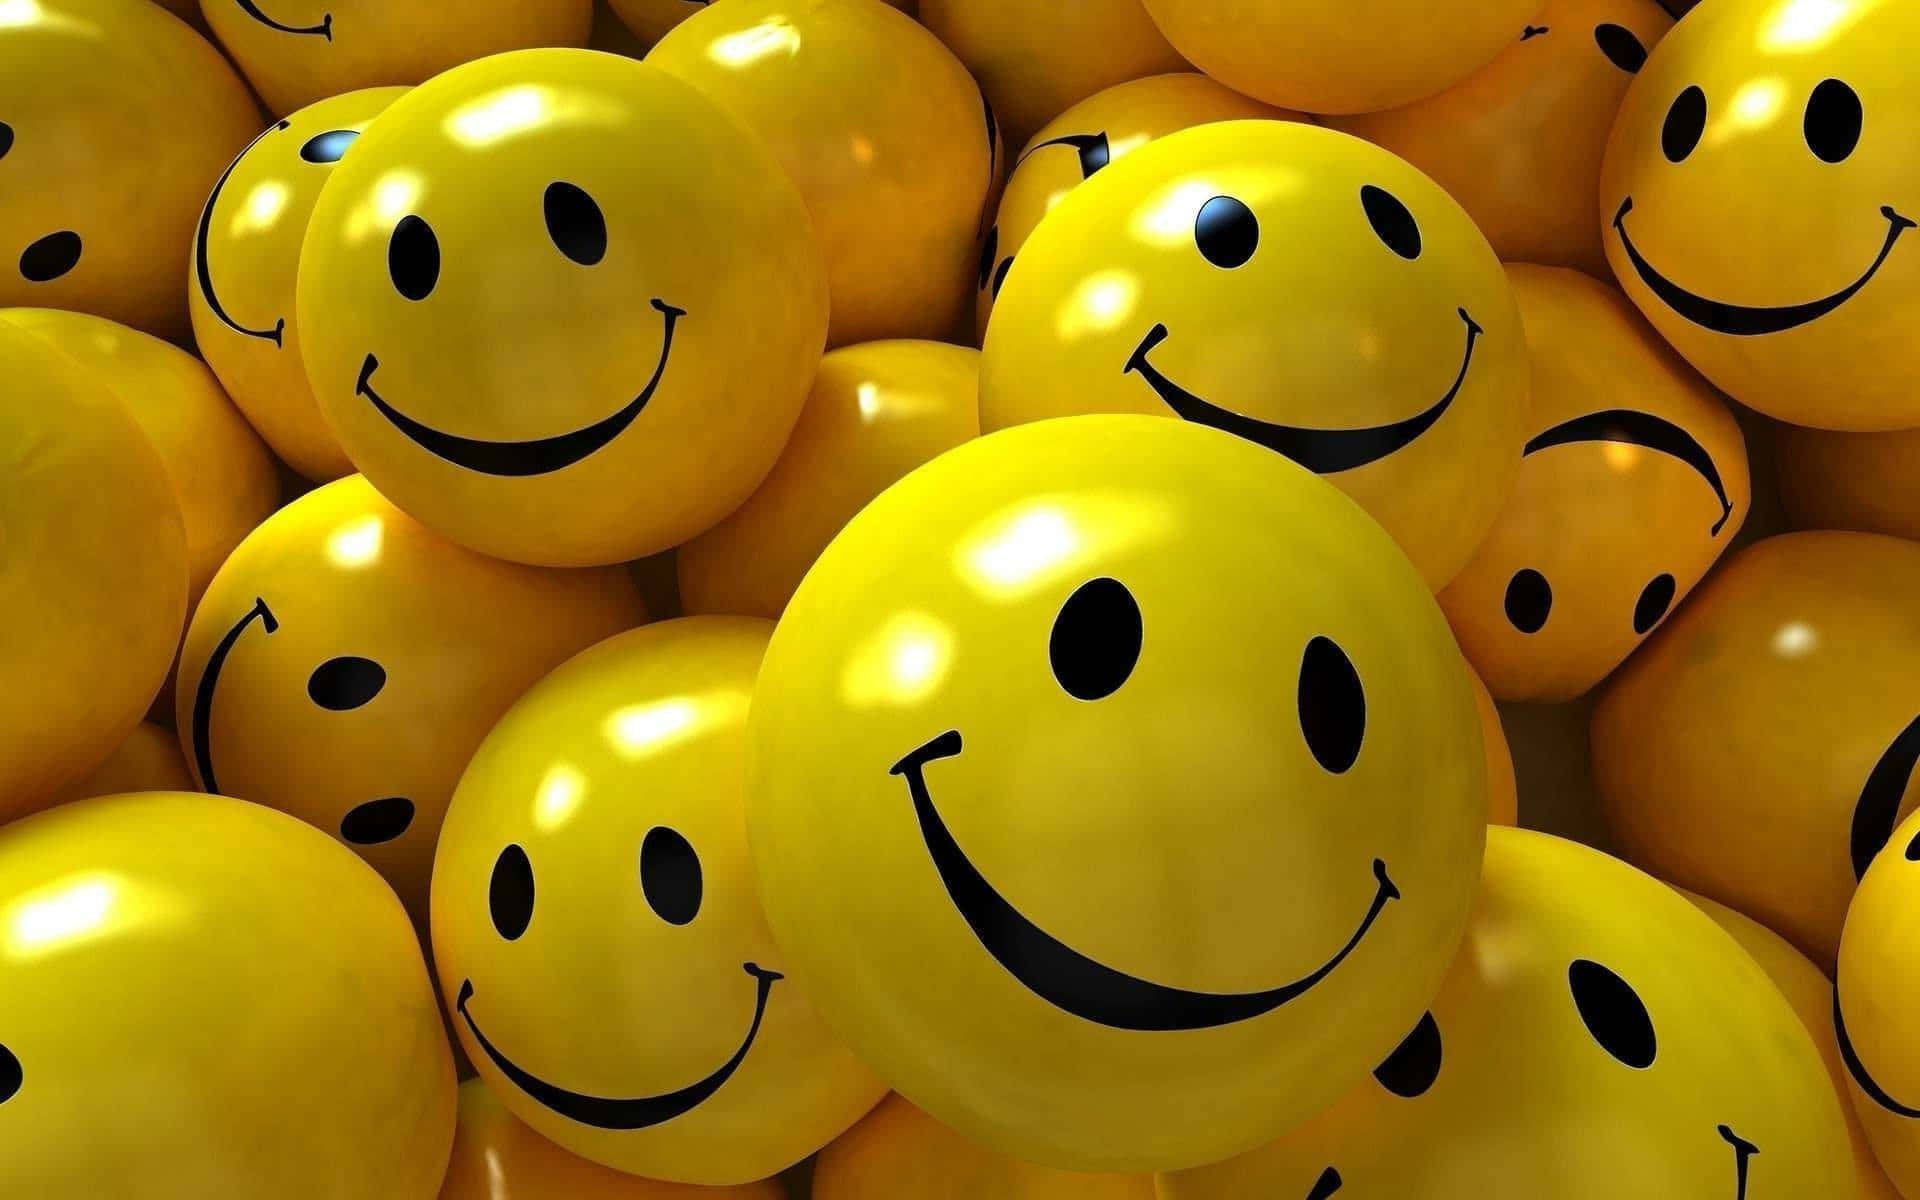 Smile Emoji Shining Yellow Ball Meme Wallpaper